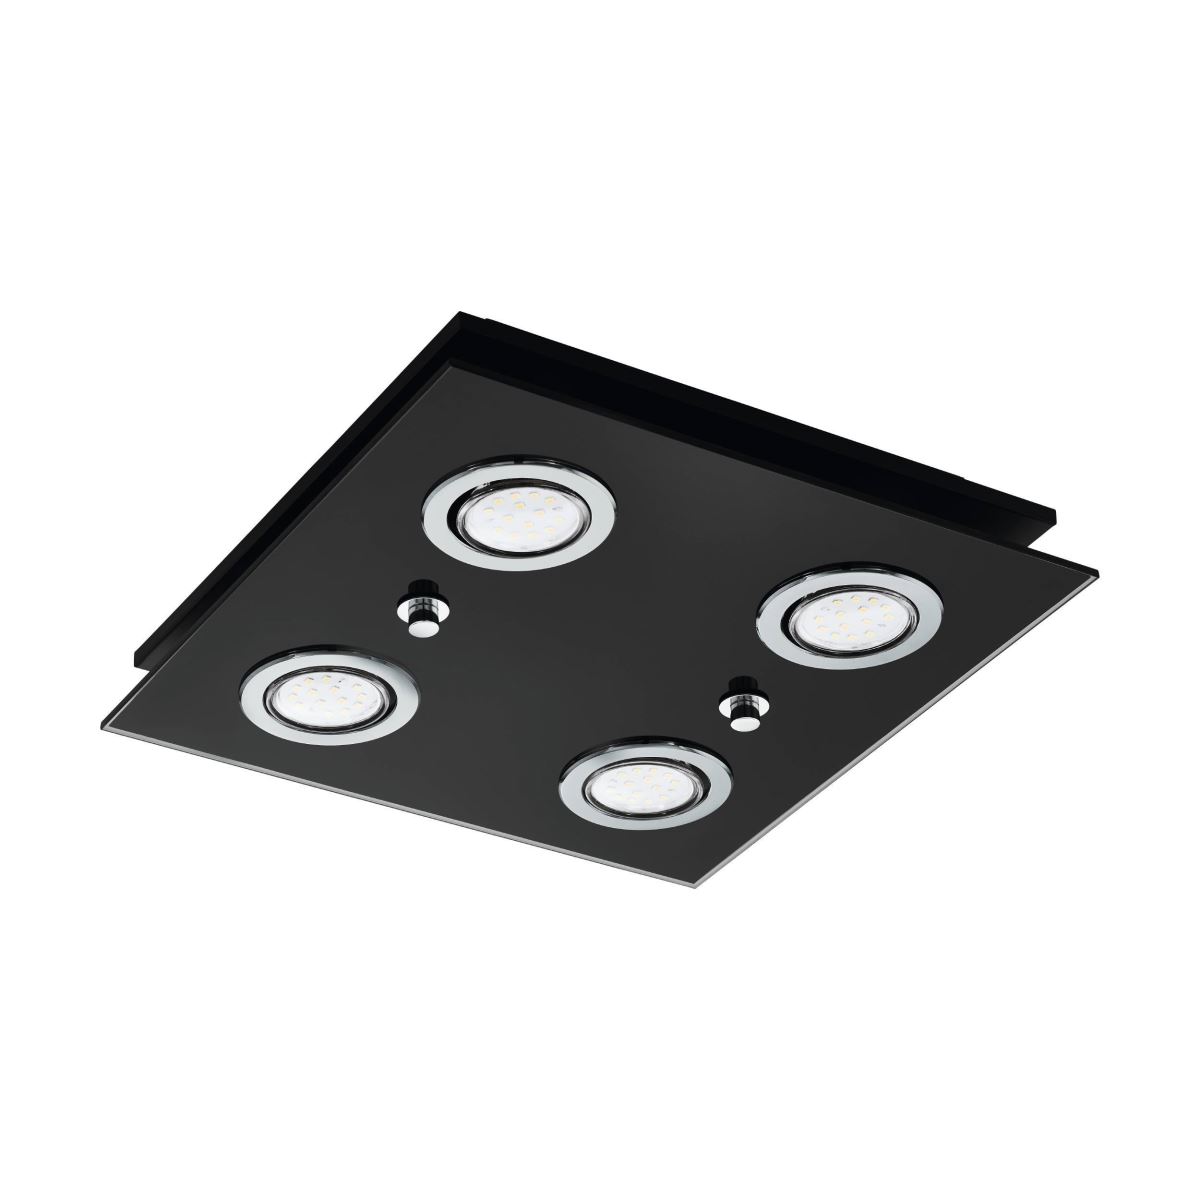 EGLO GRATTINO LED Deckenleuchte schwarz, klar 4x GU10 29x29x7cm von EGLO Leuchten